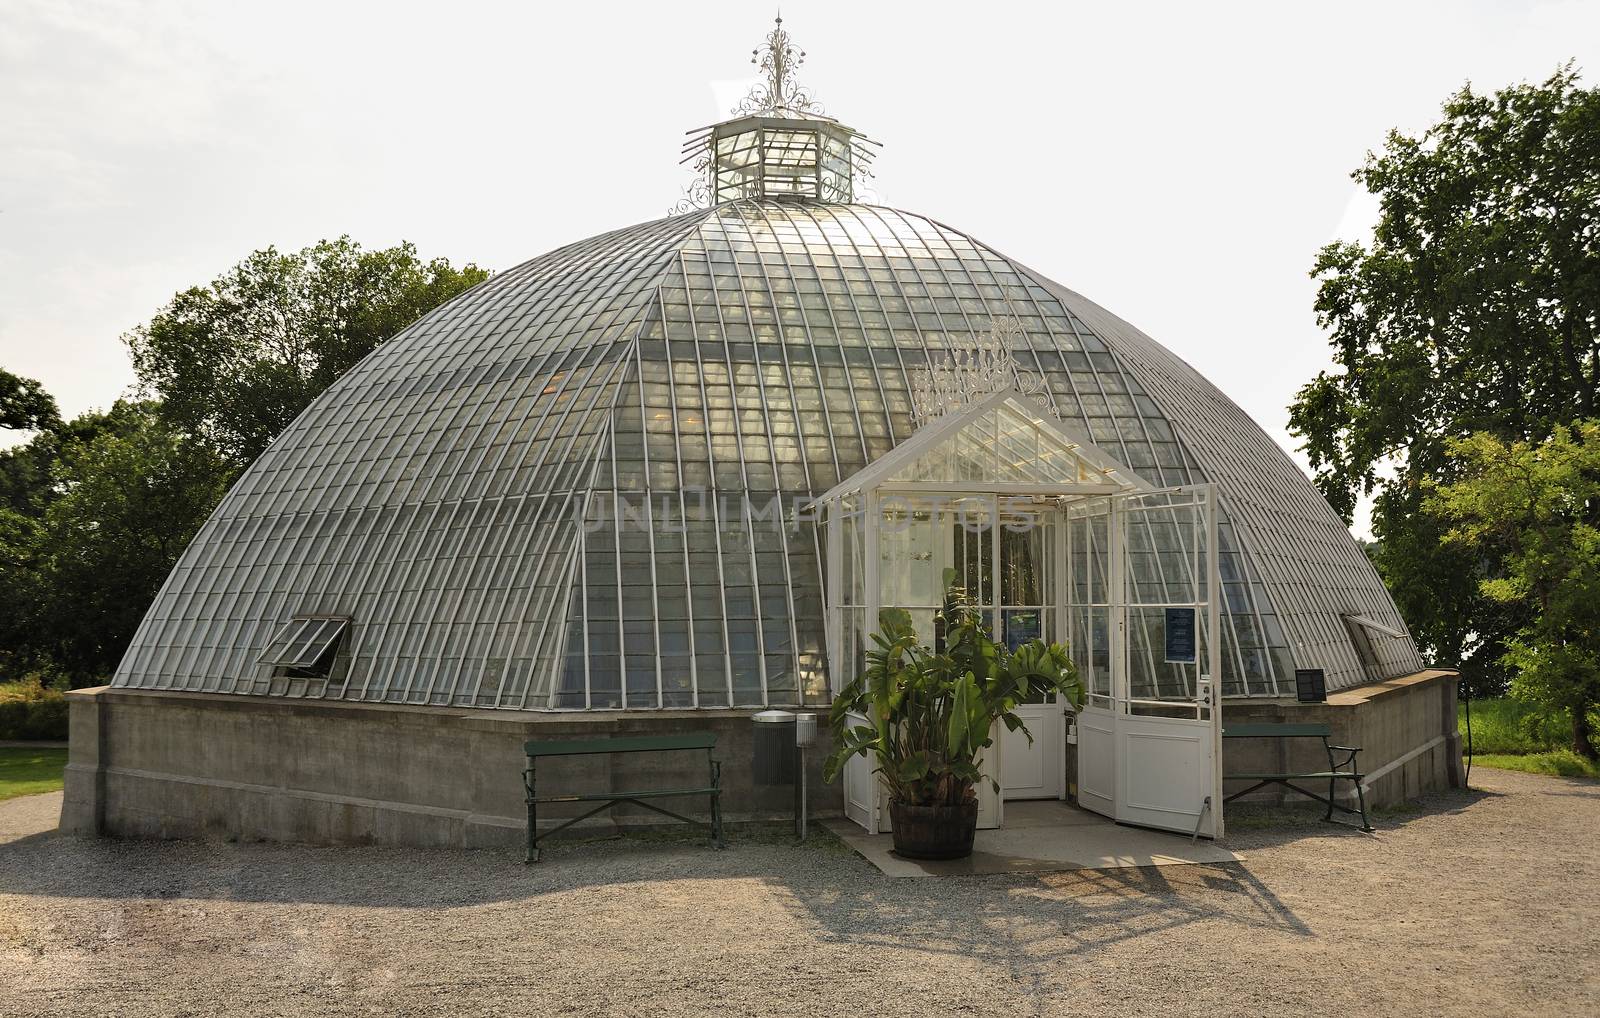 Old Greenhouse Dome in Bergianska garden in Stockholm.